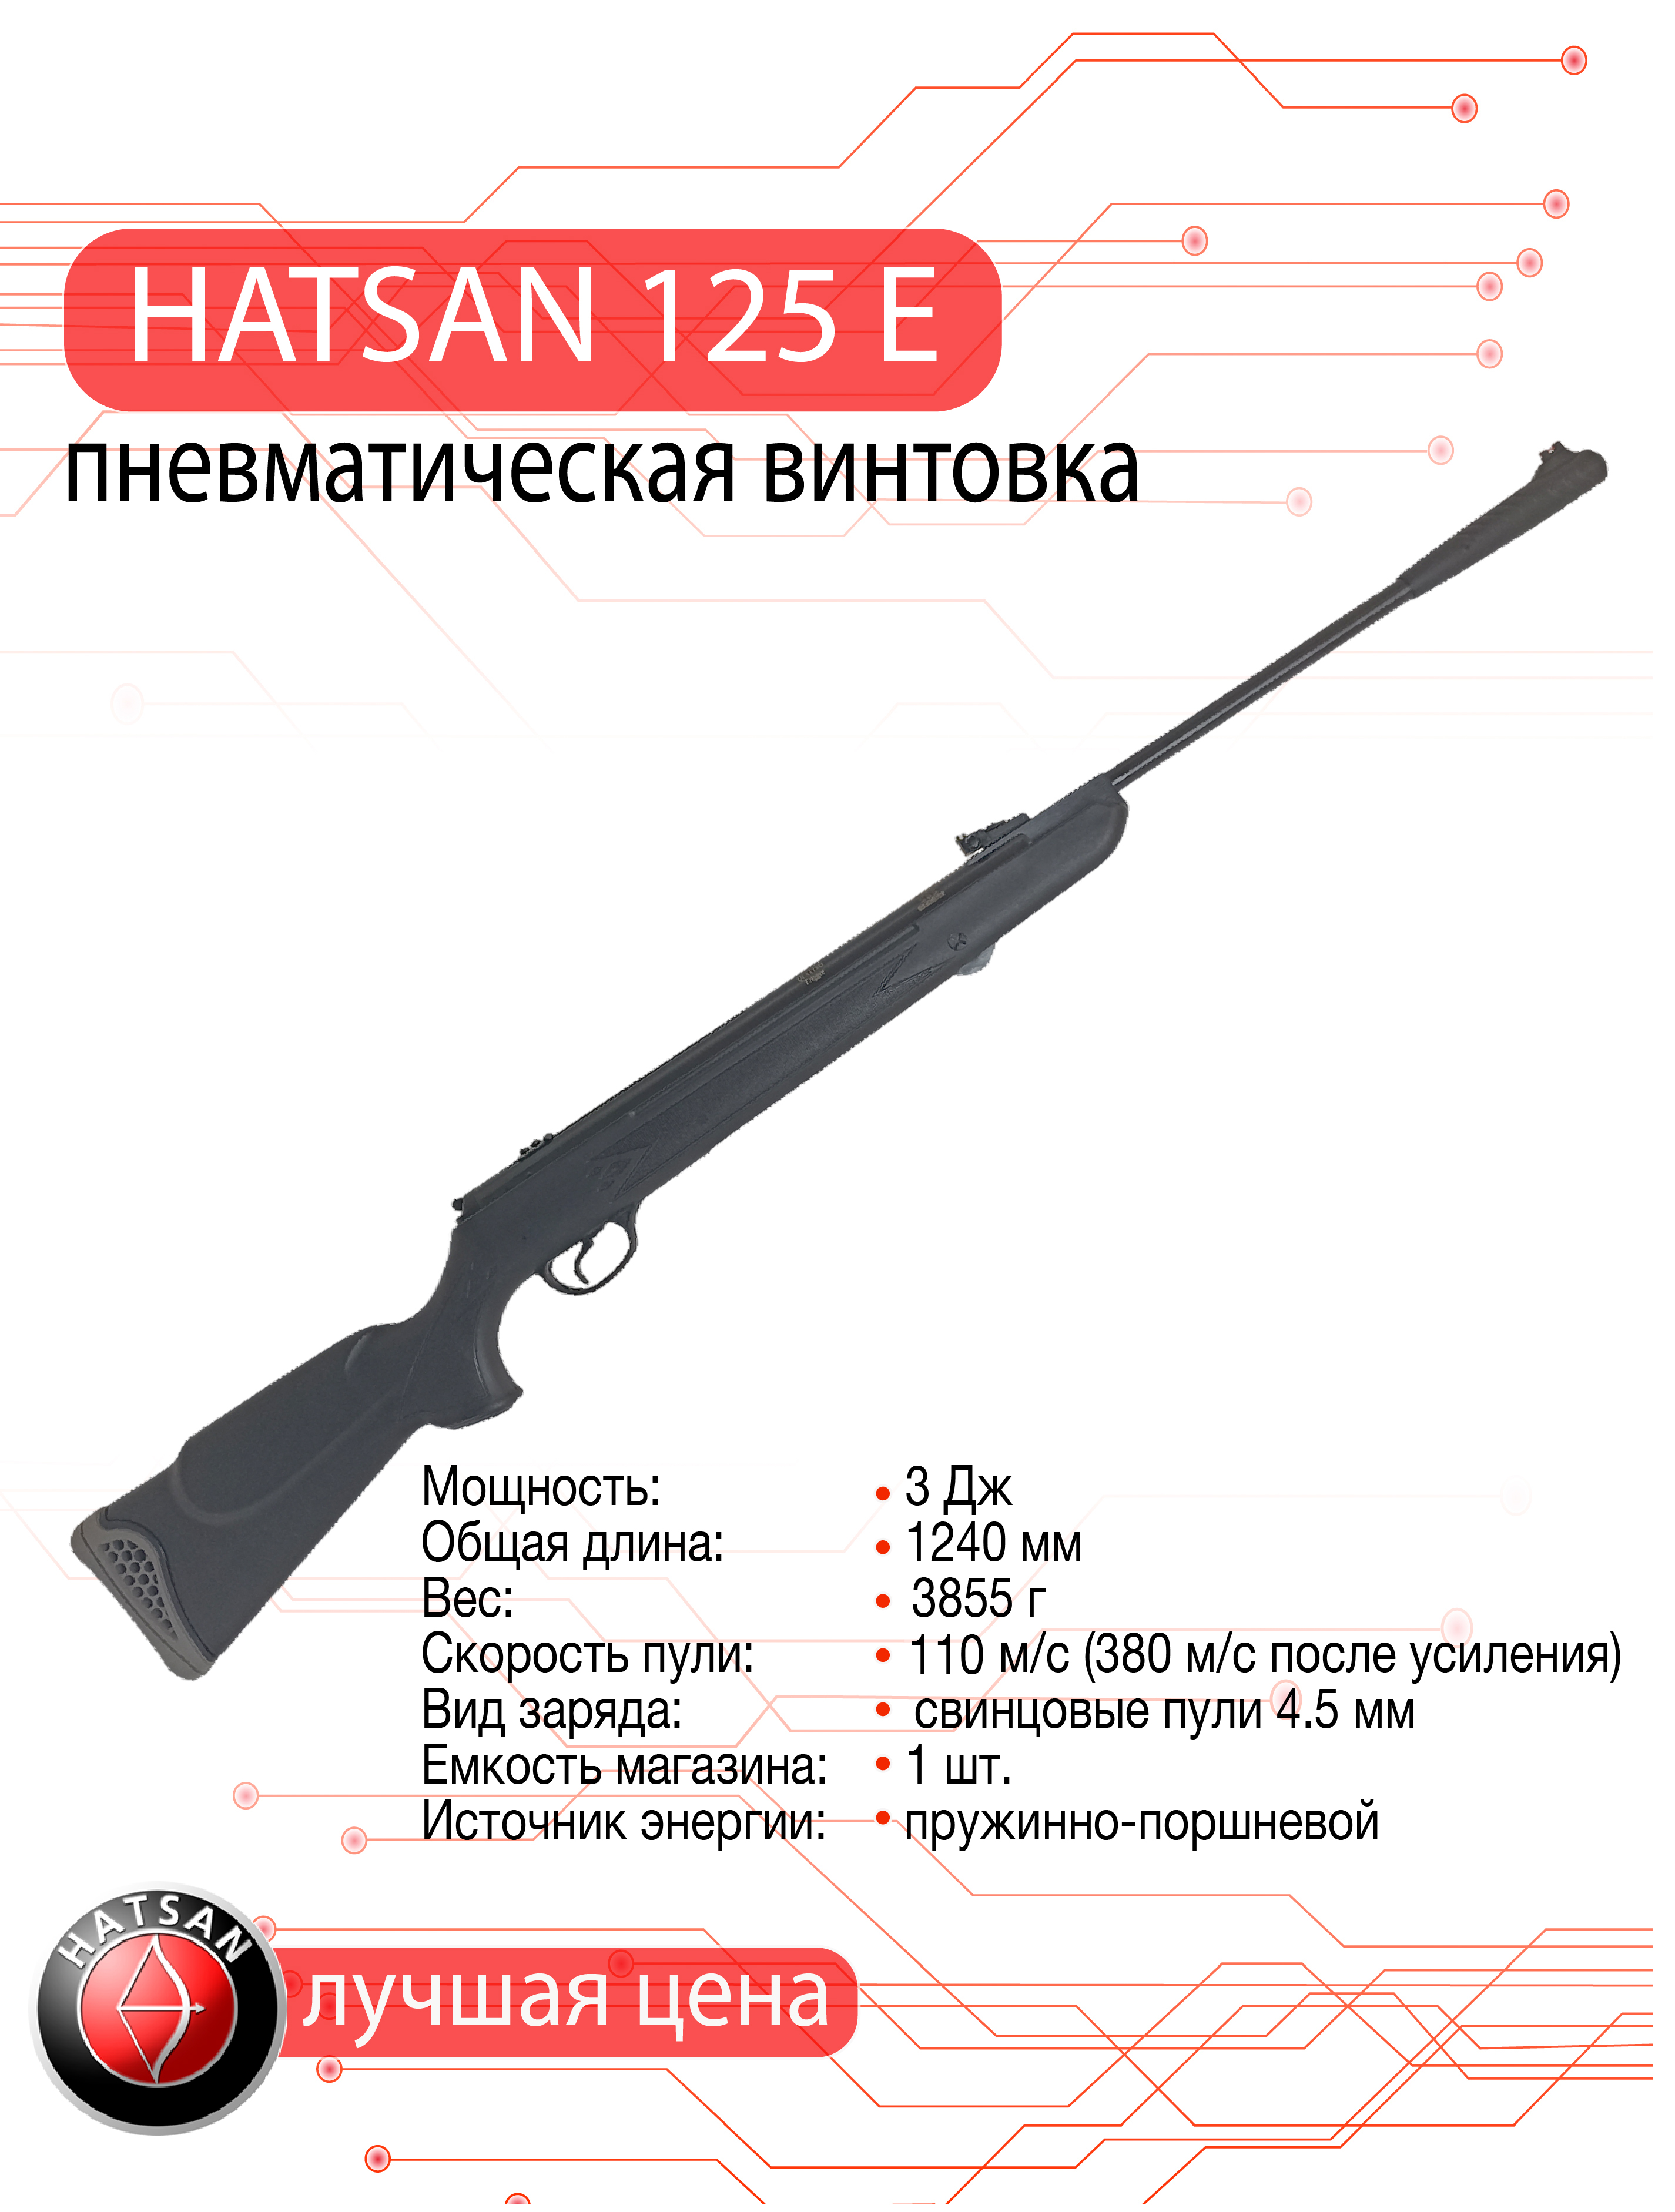 Винтовки HATSAN 6,35 мм можно купить в Москве и с доставкой по всей России.